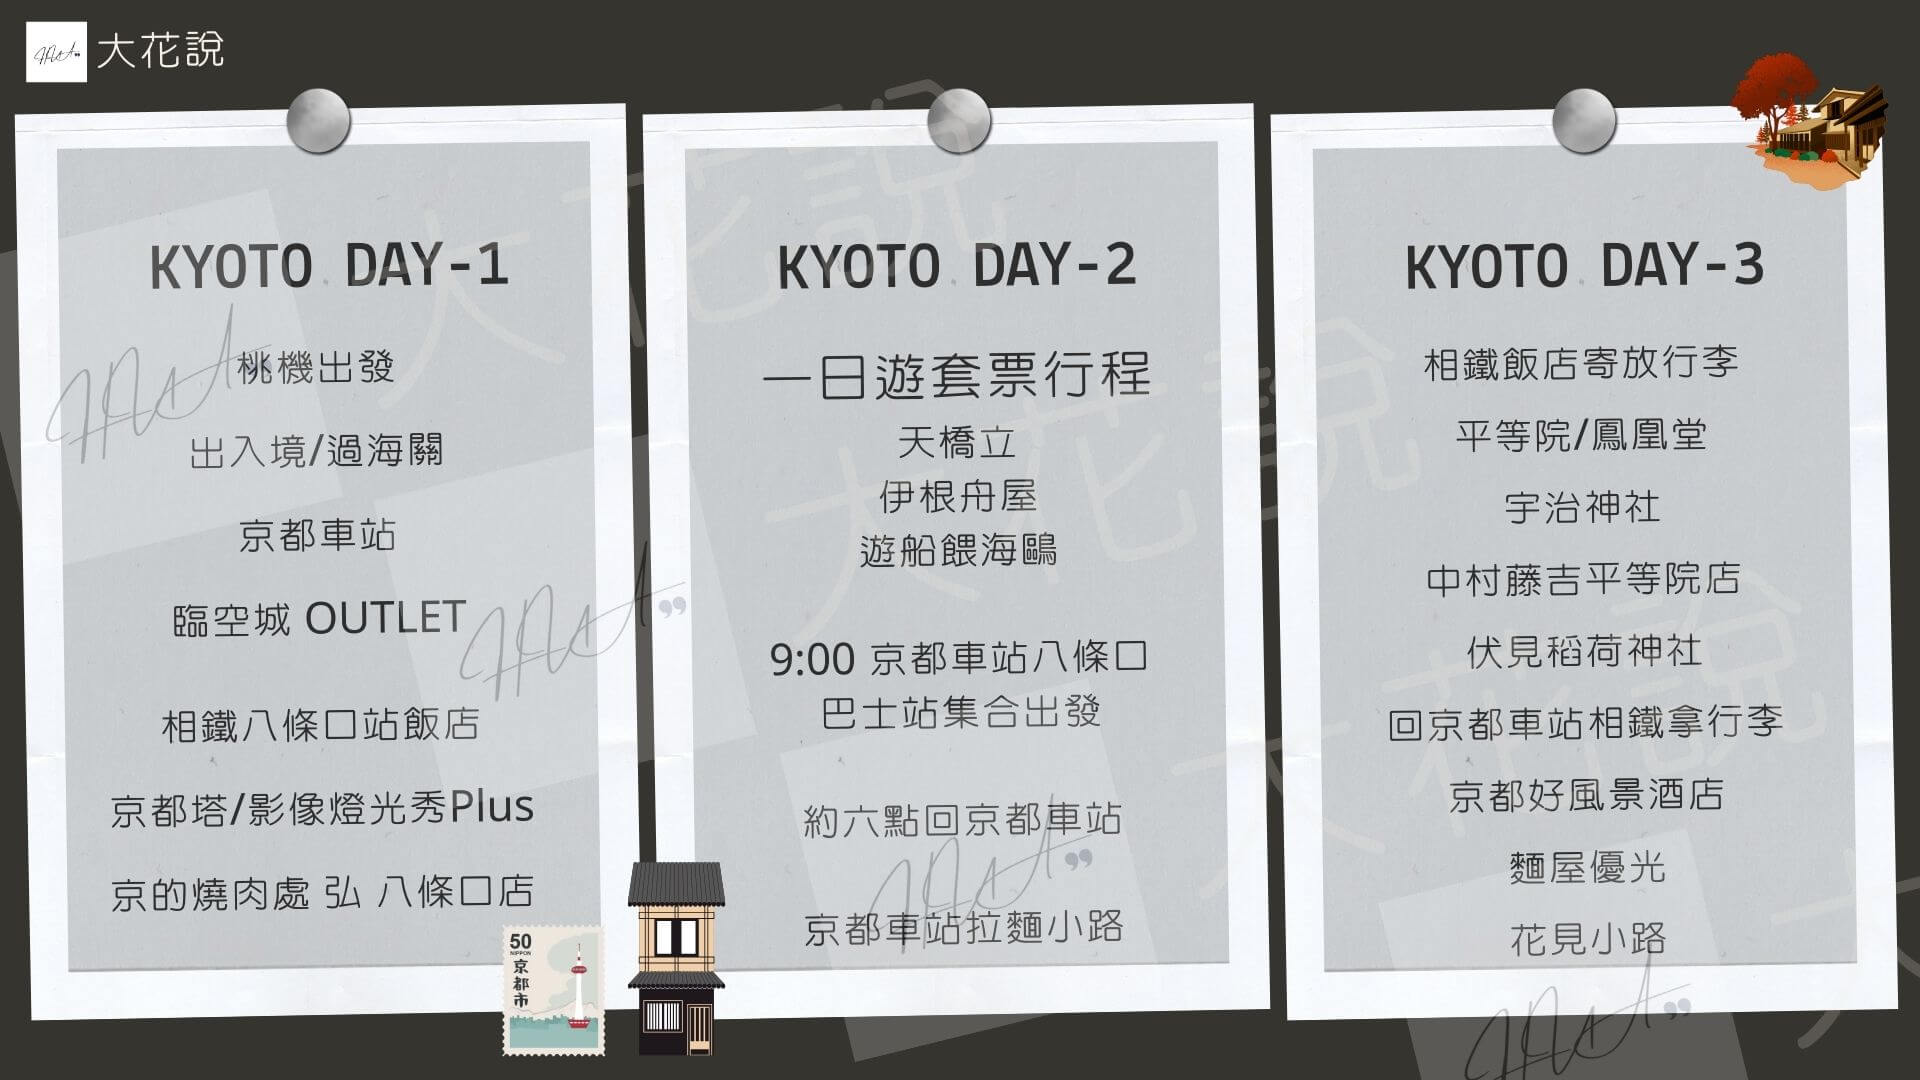 京都自由行 DAY 1 - 3 行程表